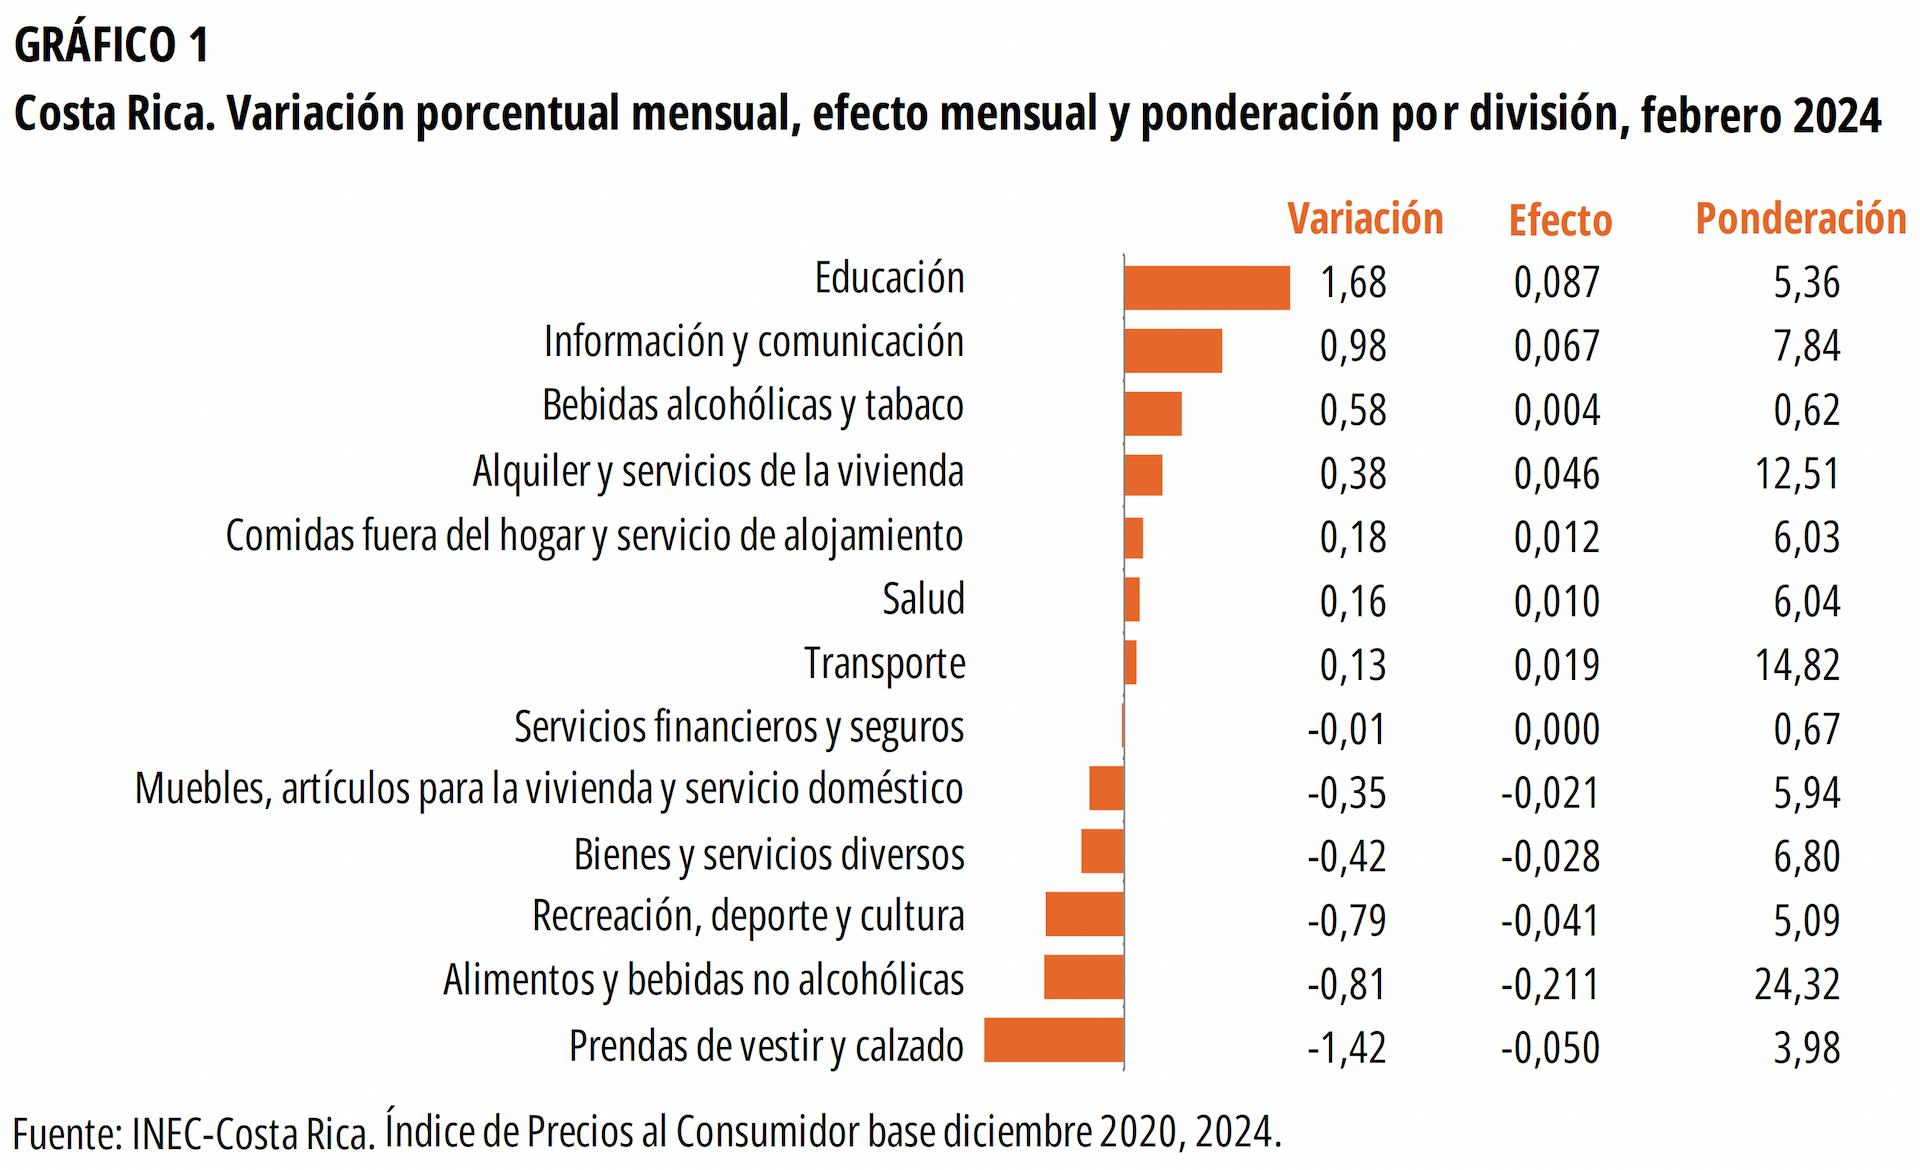 GRÁFICO 1. Costa Rica. Variación porcentual mensual, efecto mensual y ponderación por división, febrero 2024.